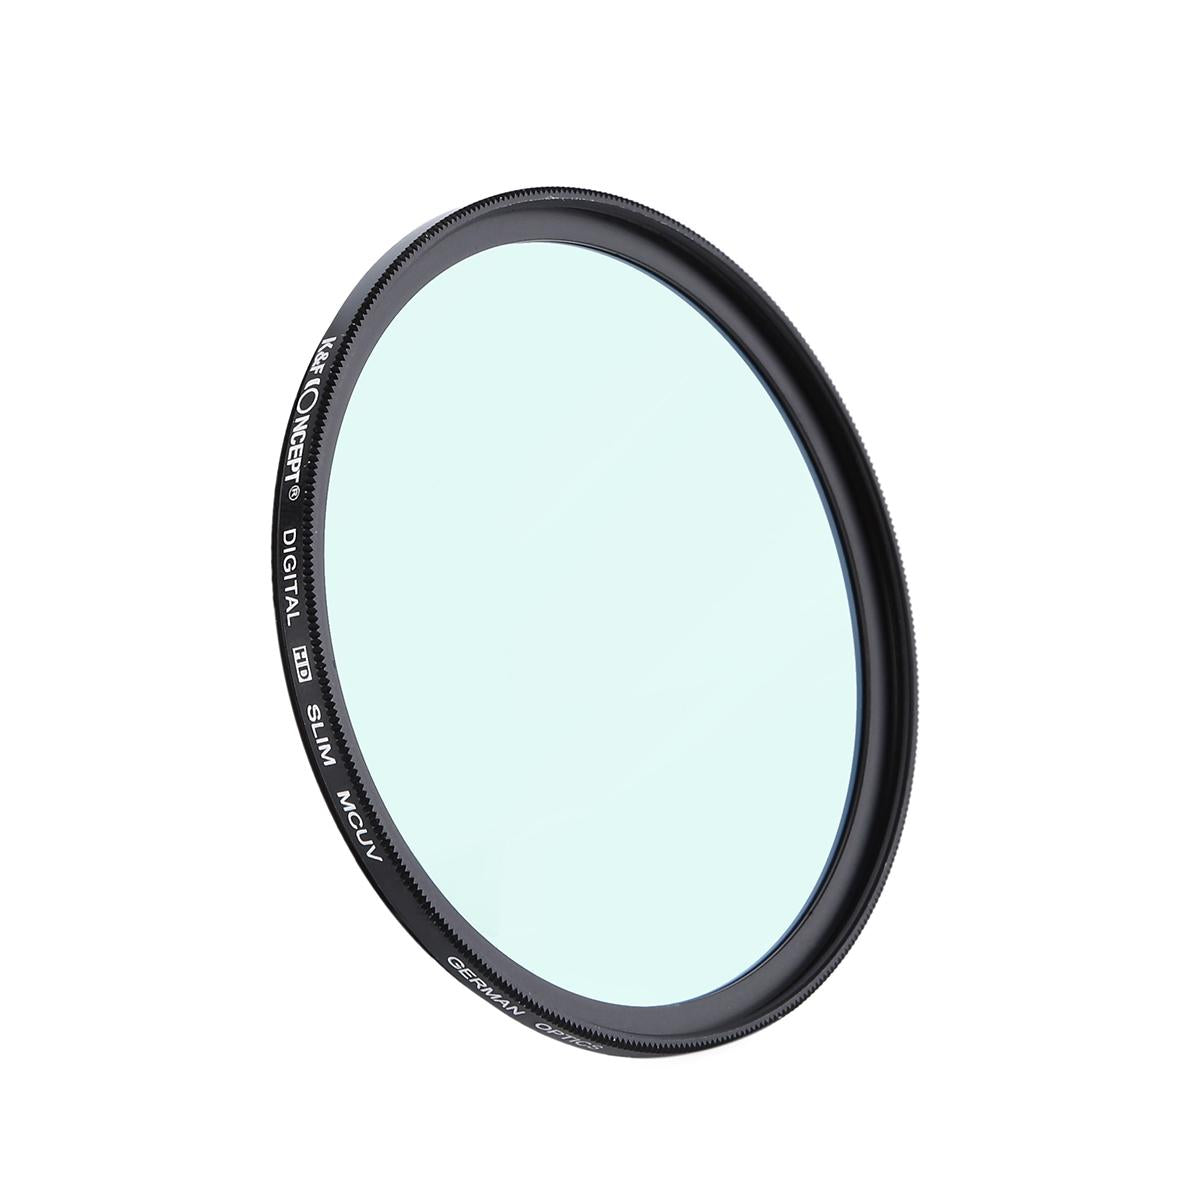 K&F Concept 58mm Slim UV Filter Multi Coated Ultraviolet Protection Lens Filter